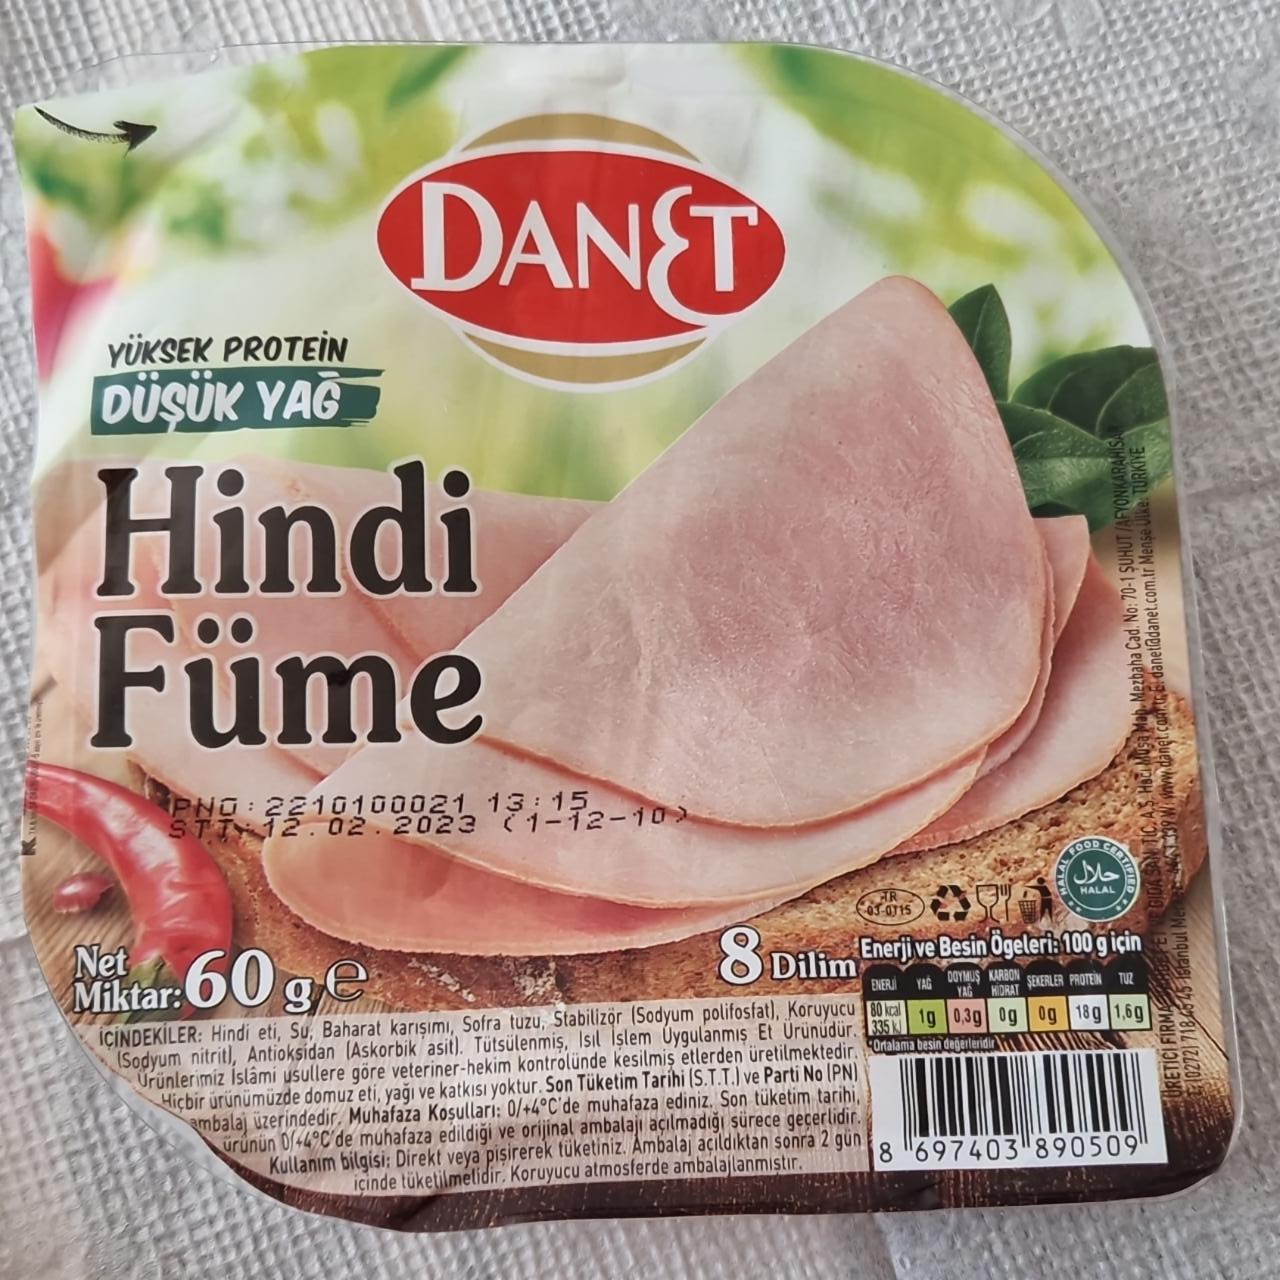 Фото - hindi fume колбаса из индейки Danet